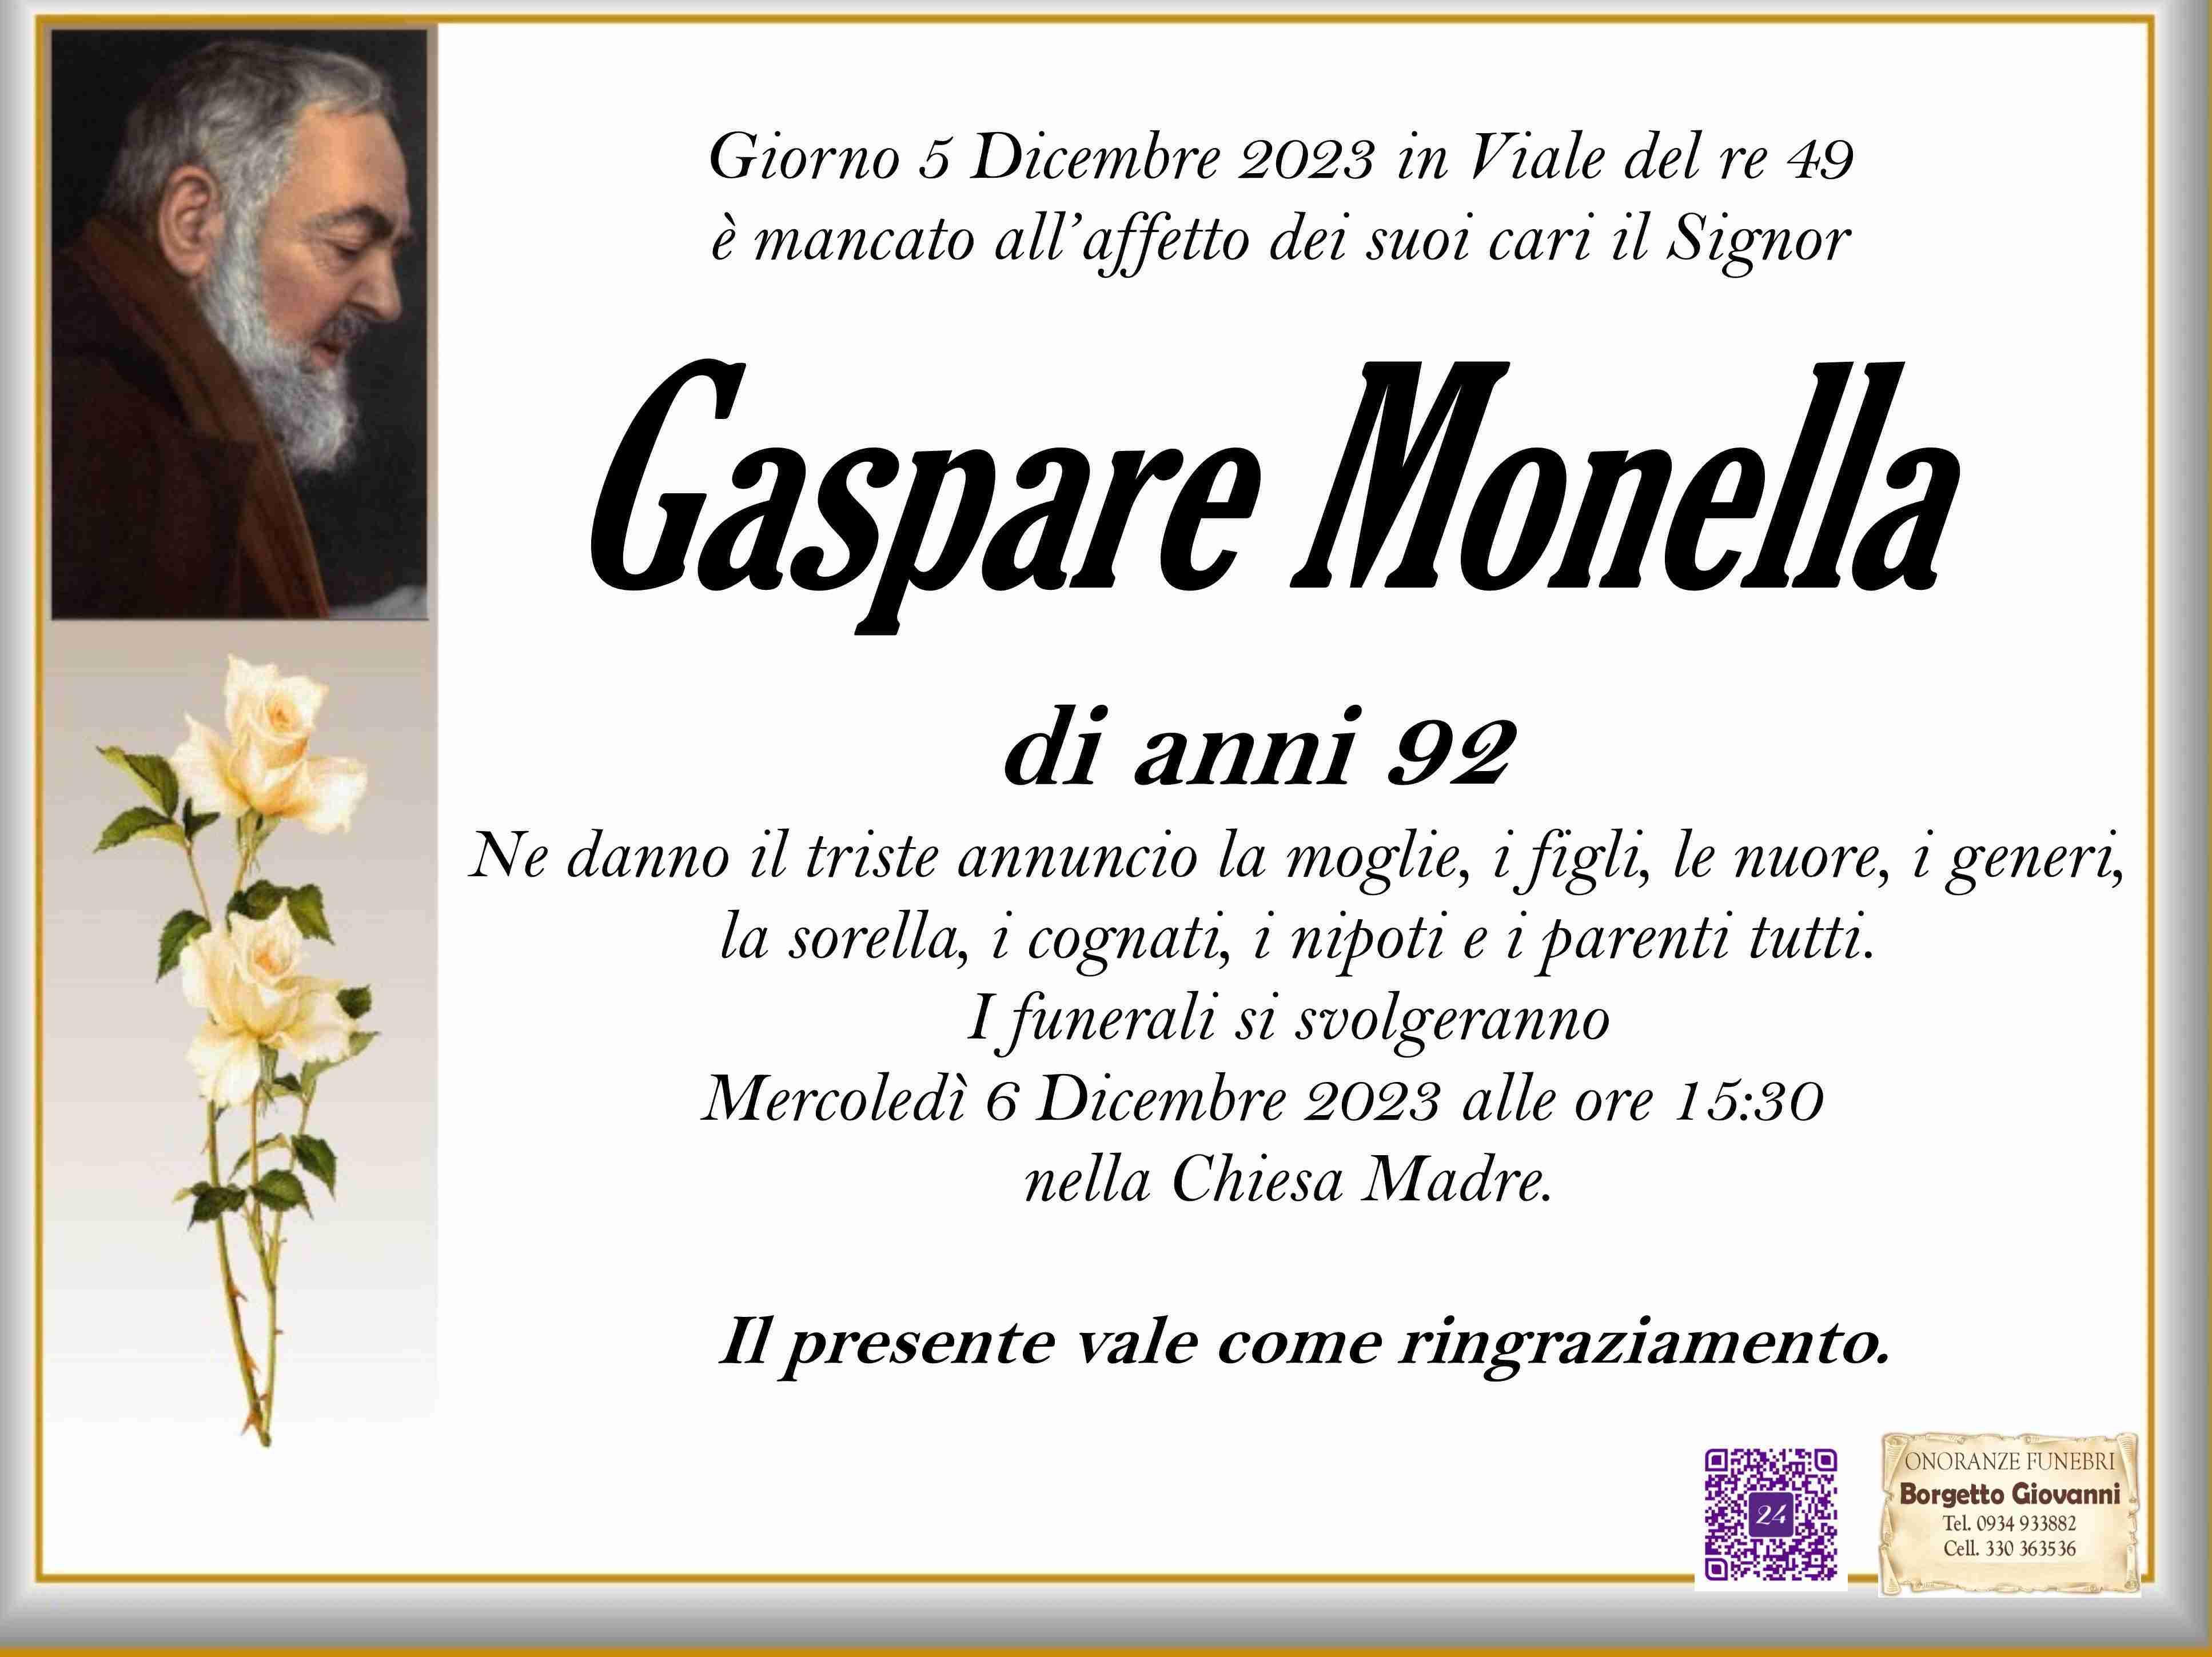 Gaspare Monella